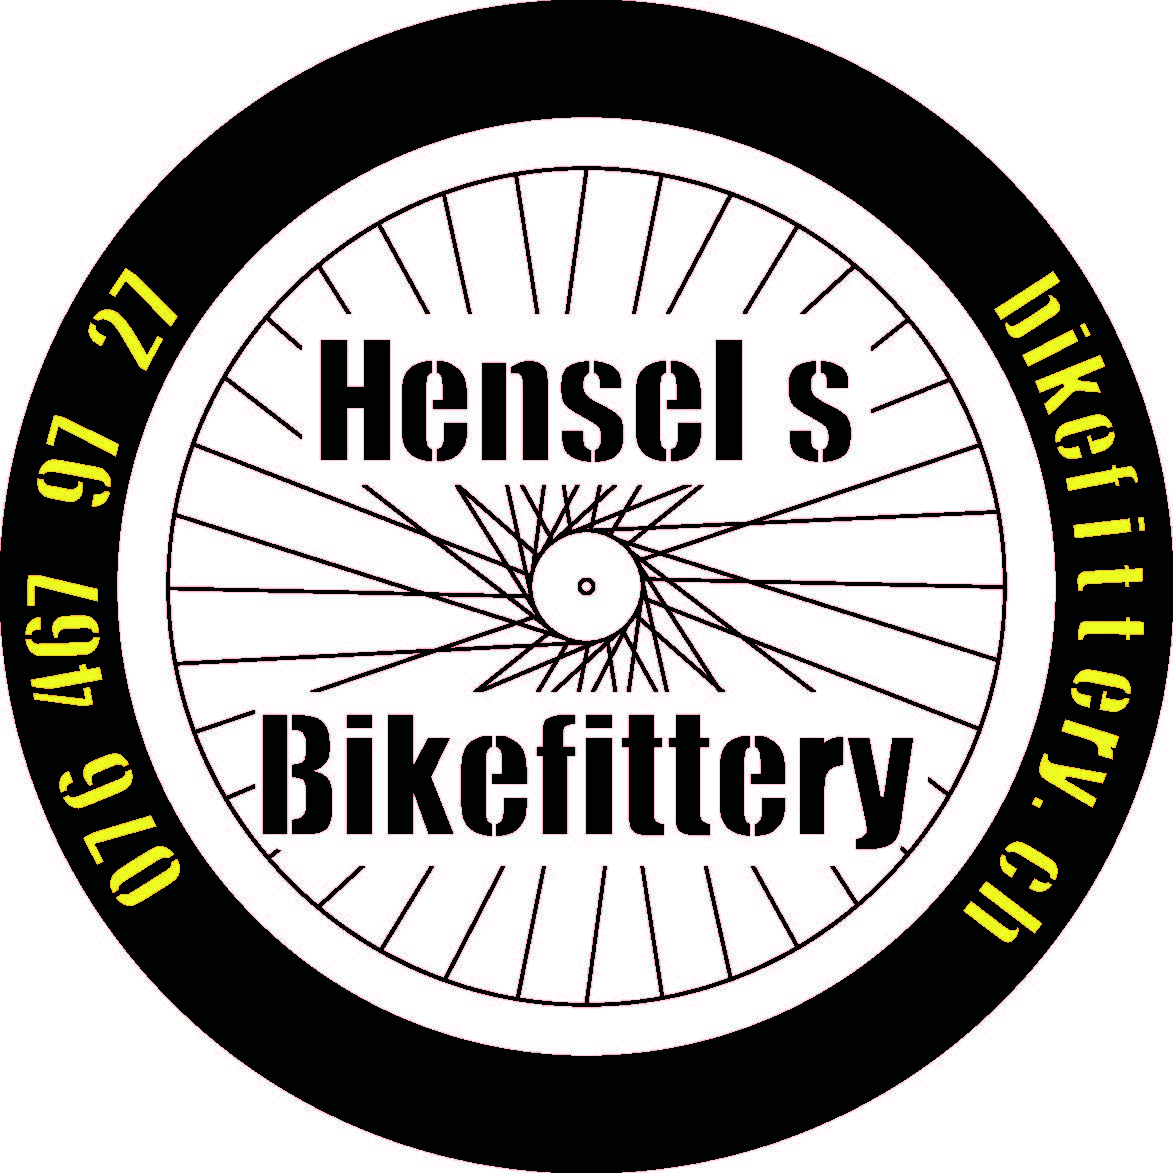 Hensels Bikefittery